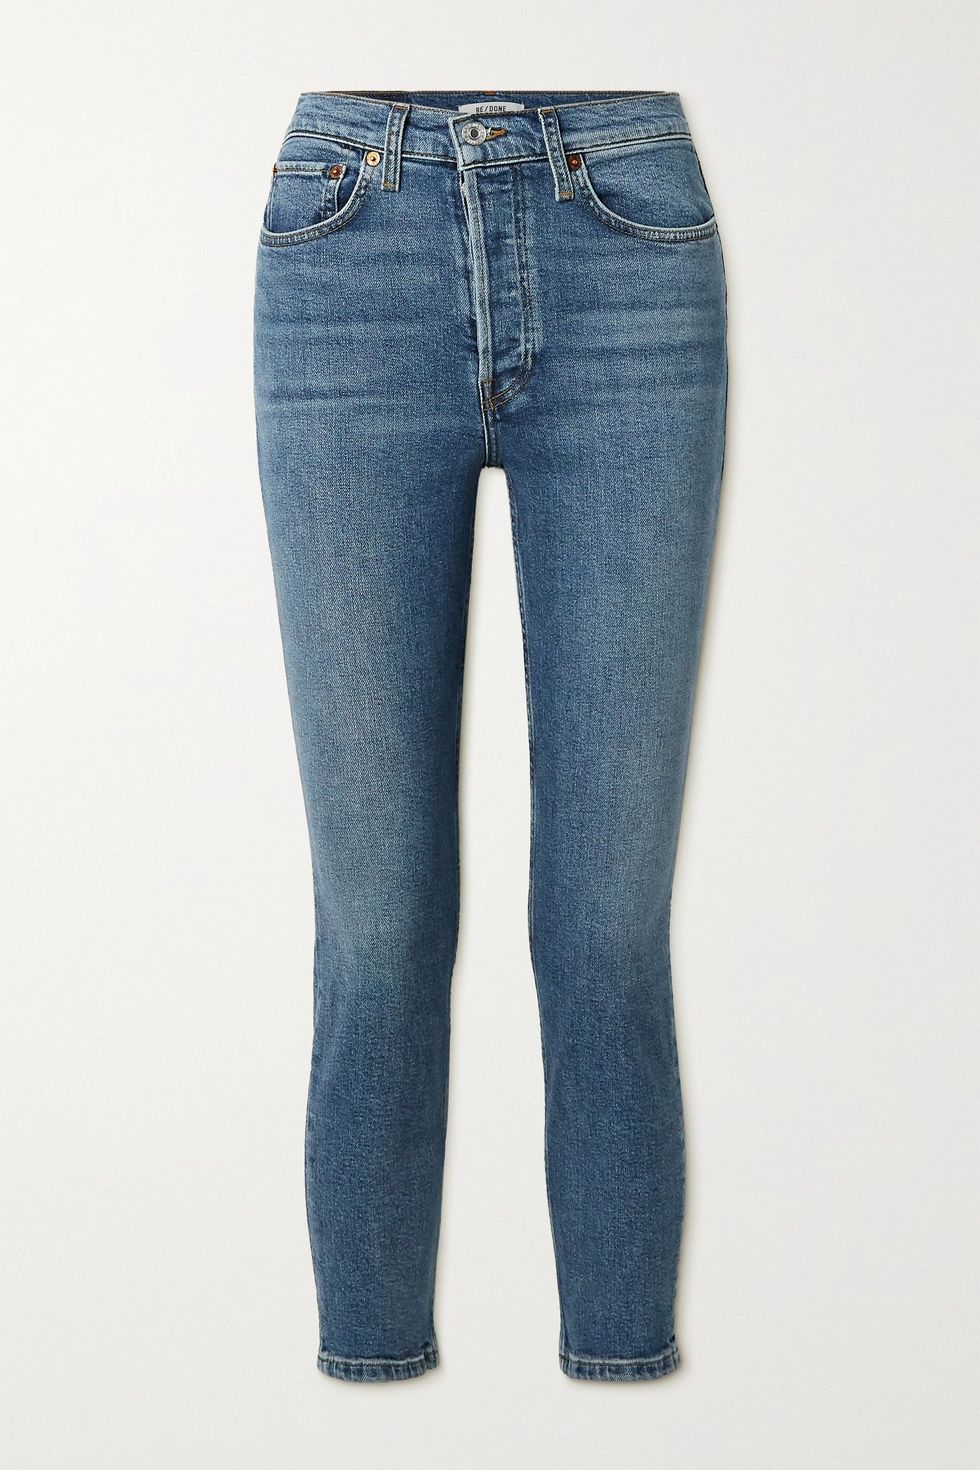 Pretty Attractive Women's Jeans  Women jeans, Latest jeans, Women denim  jeans